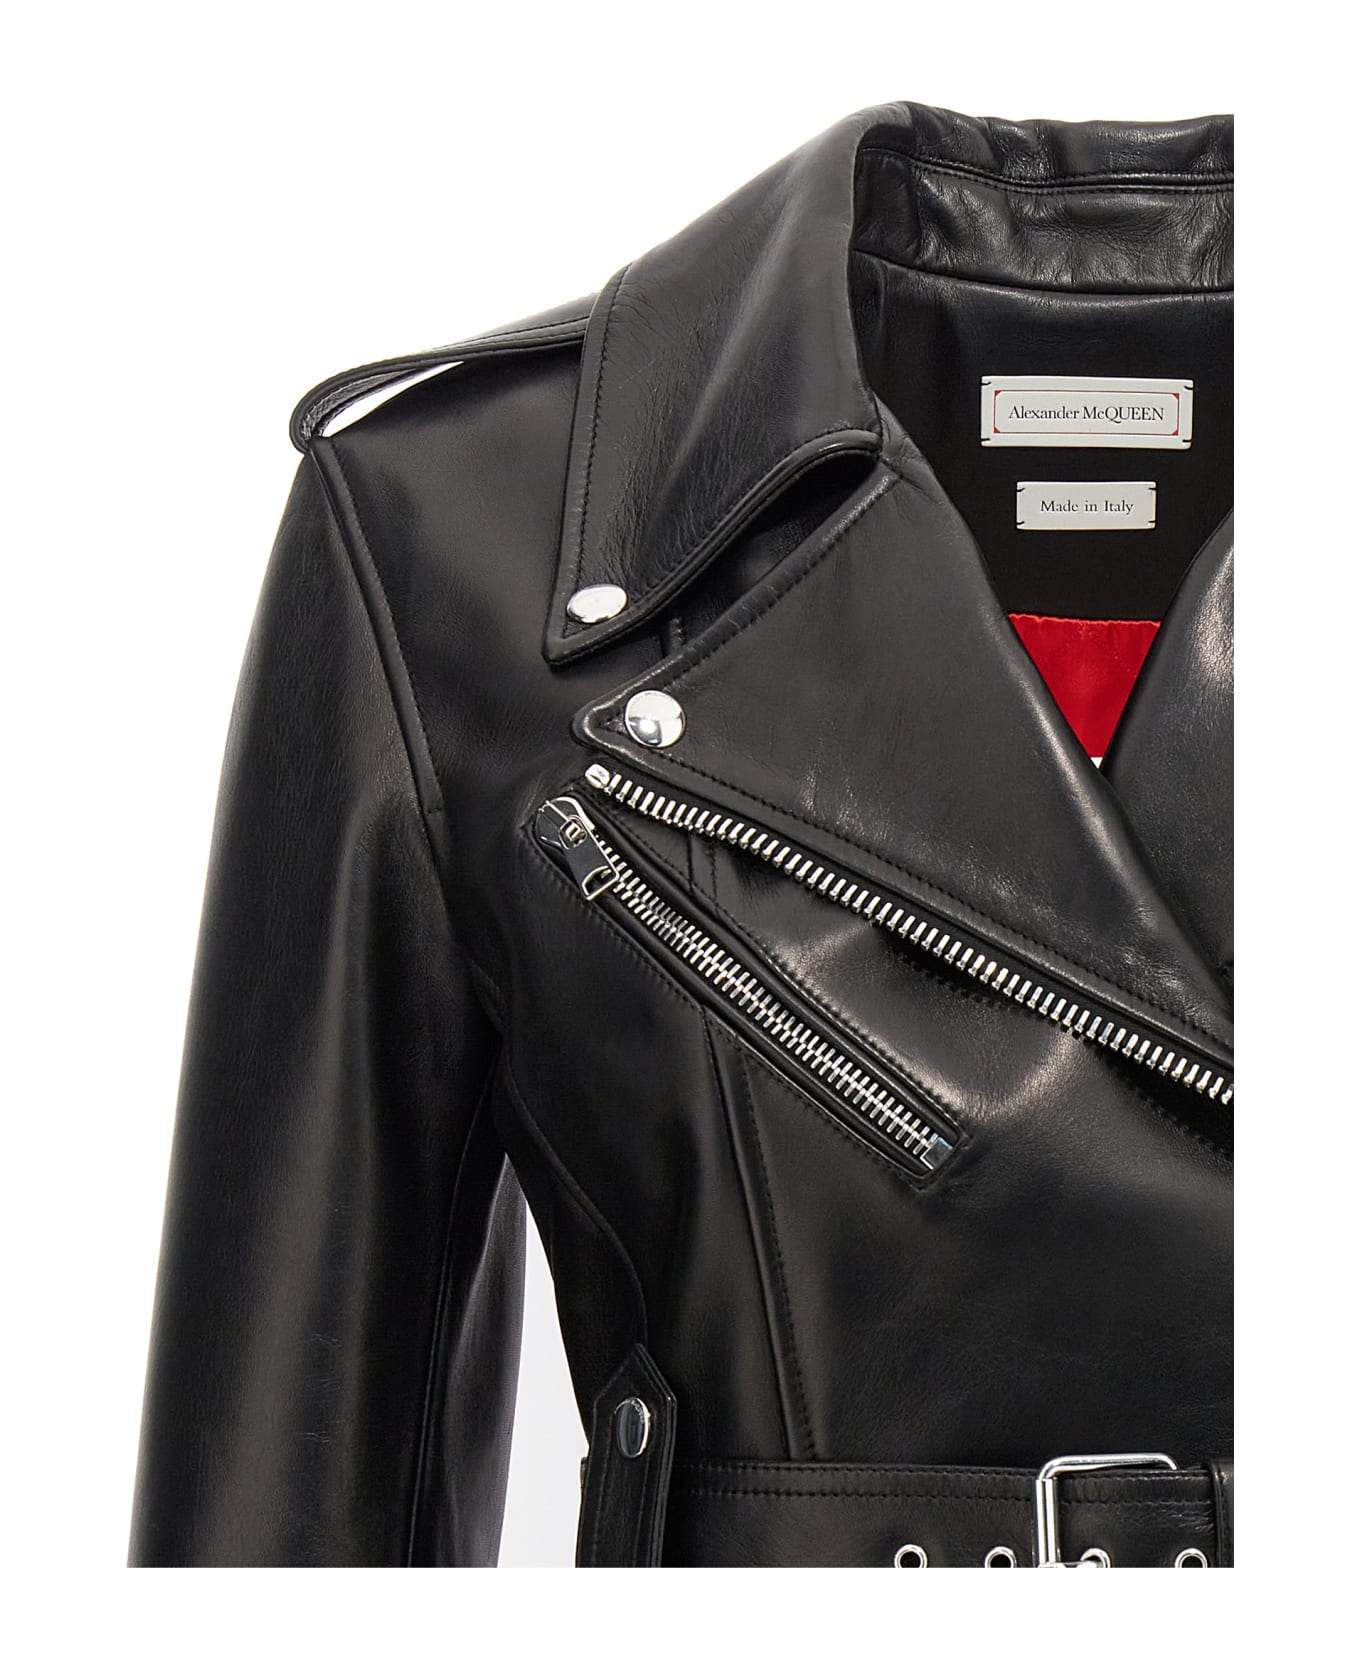 Alexander McQueen Biker Jacket With Peplum Hem And Belt - Nero コート